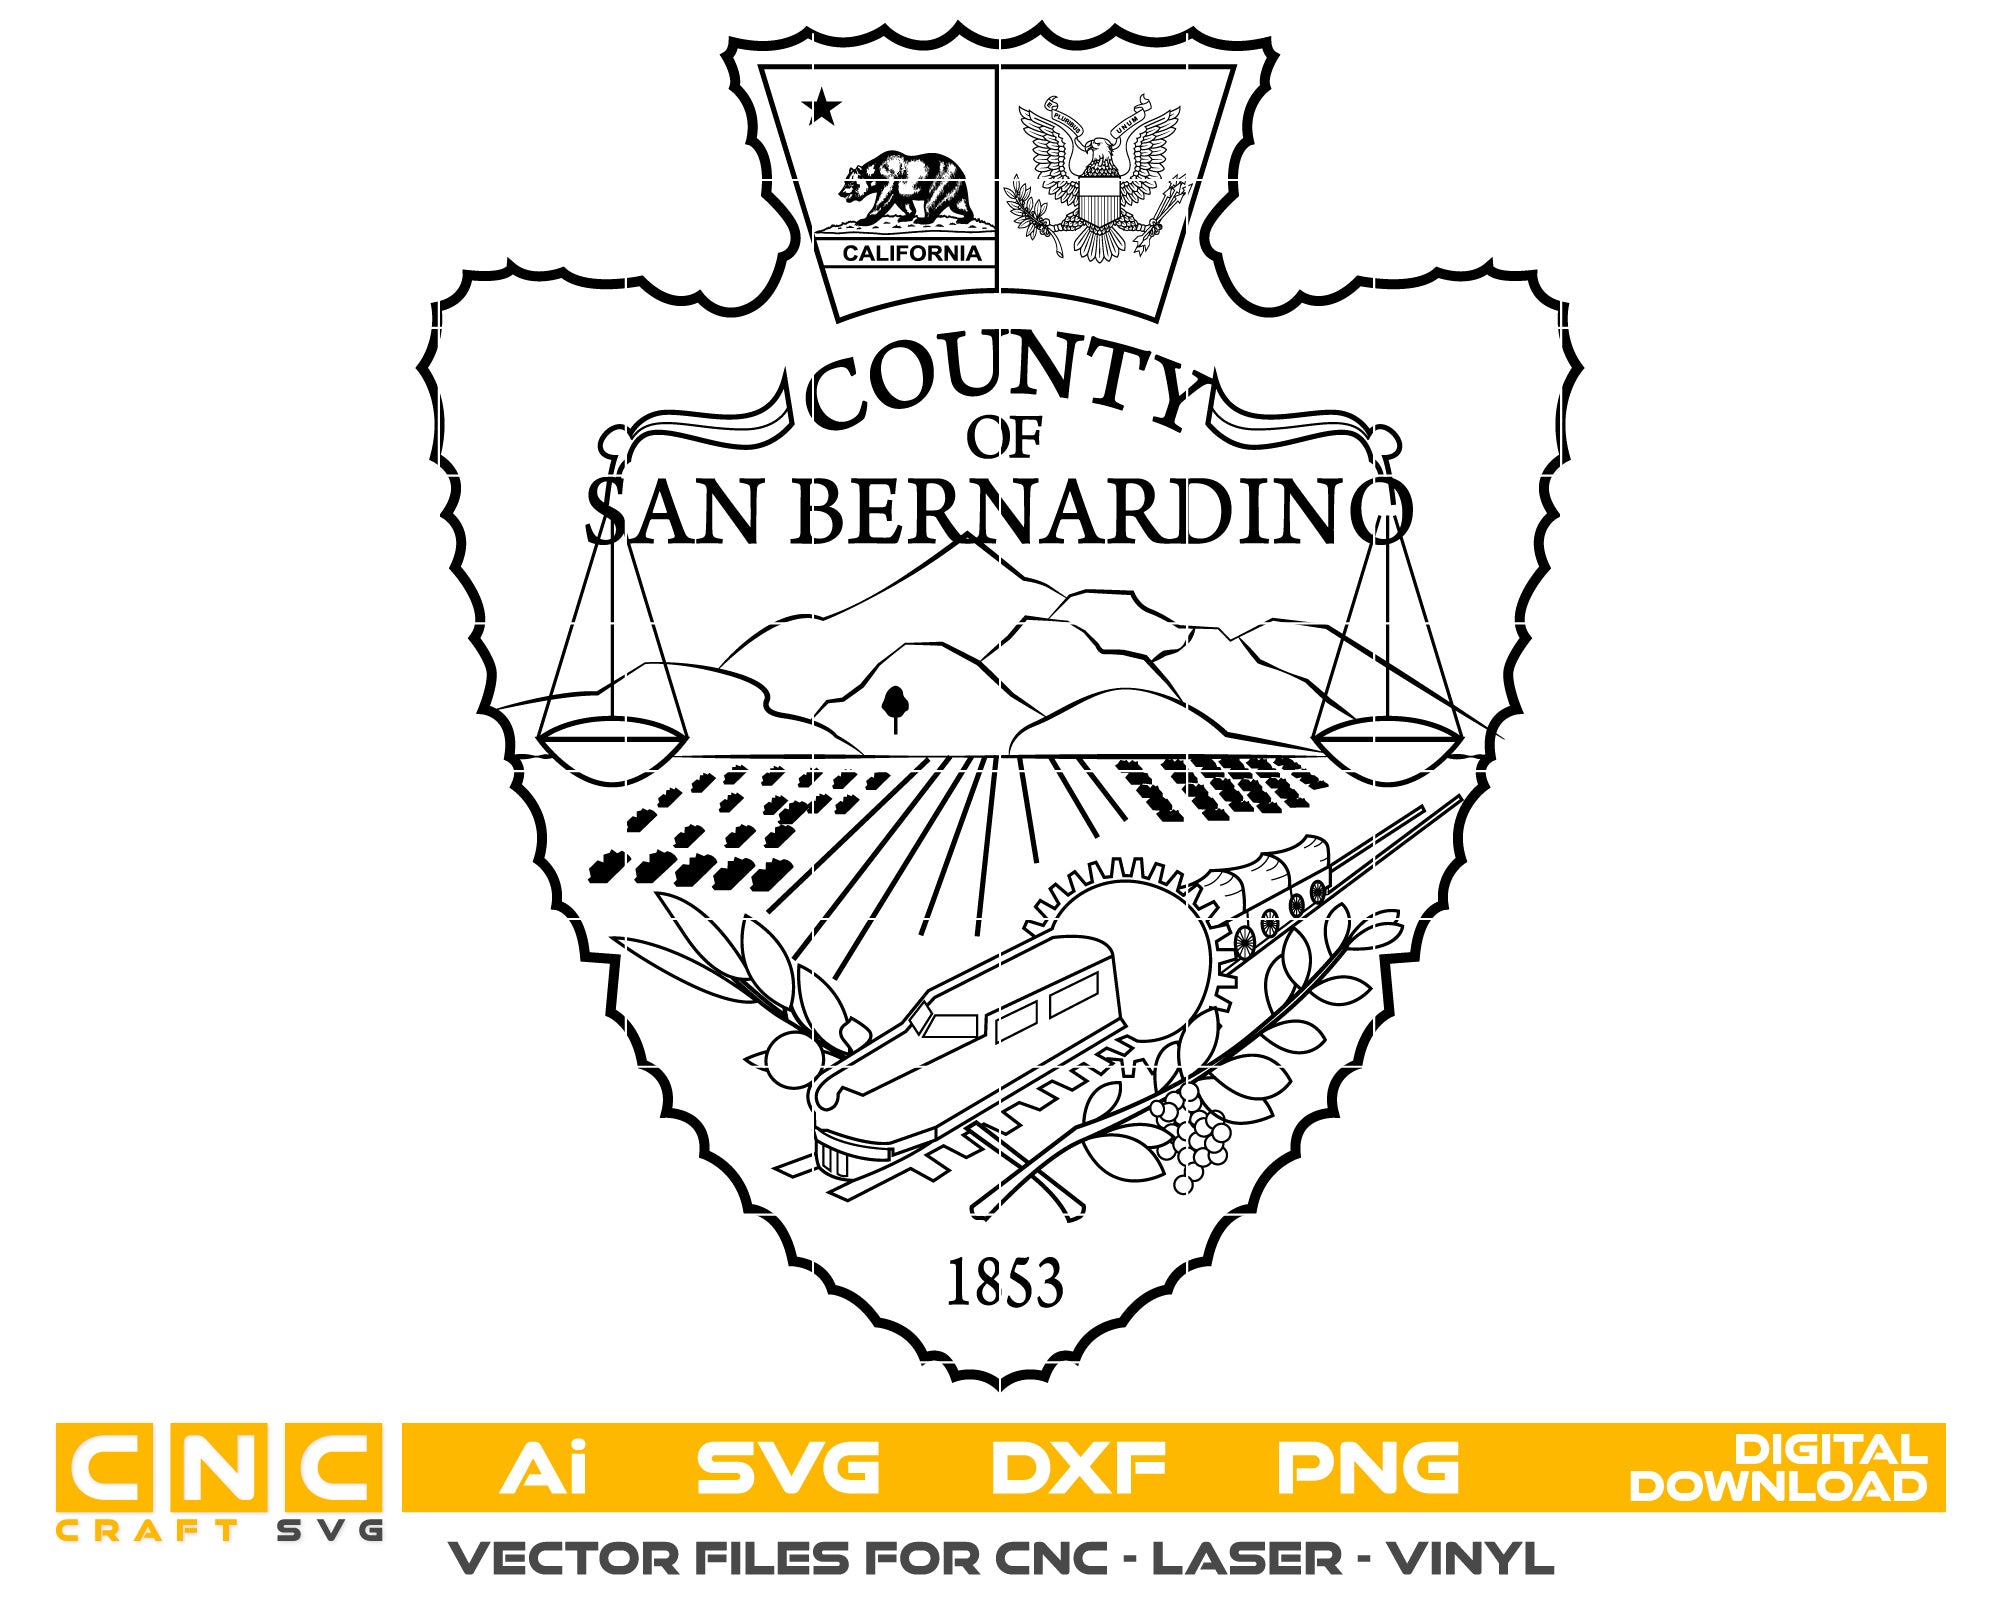 San Bernardino County Seal vector art